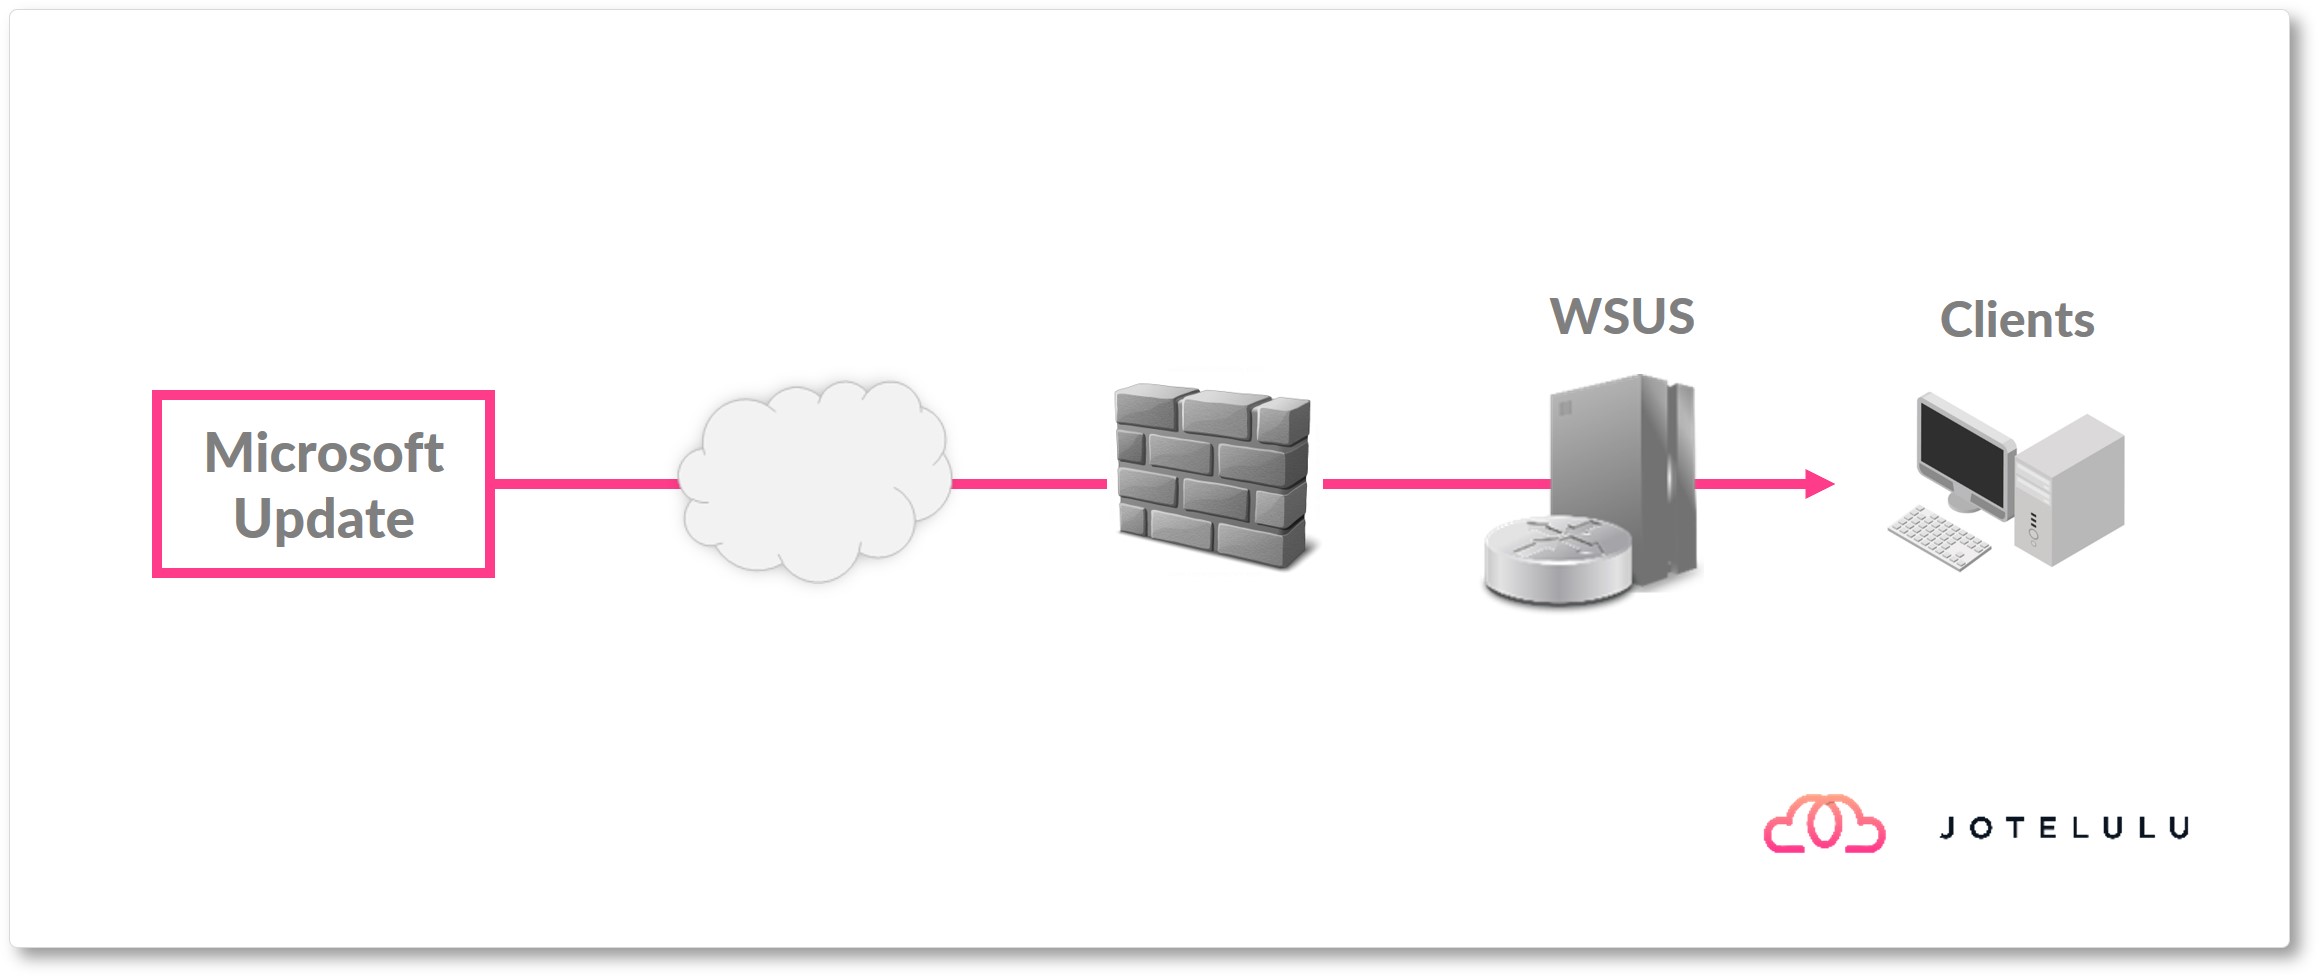 Image - Basic WSUS architecture